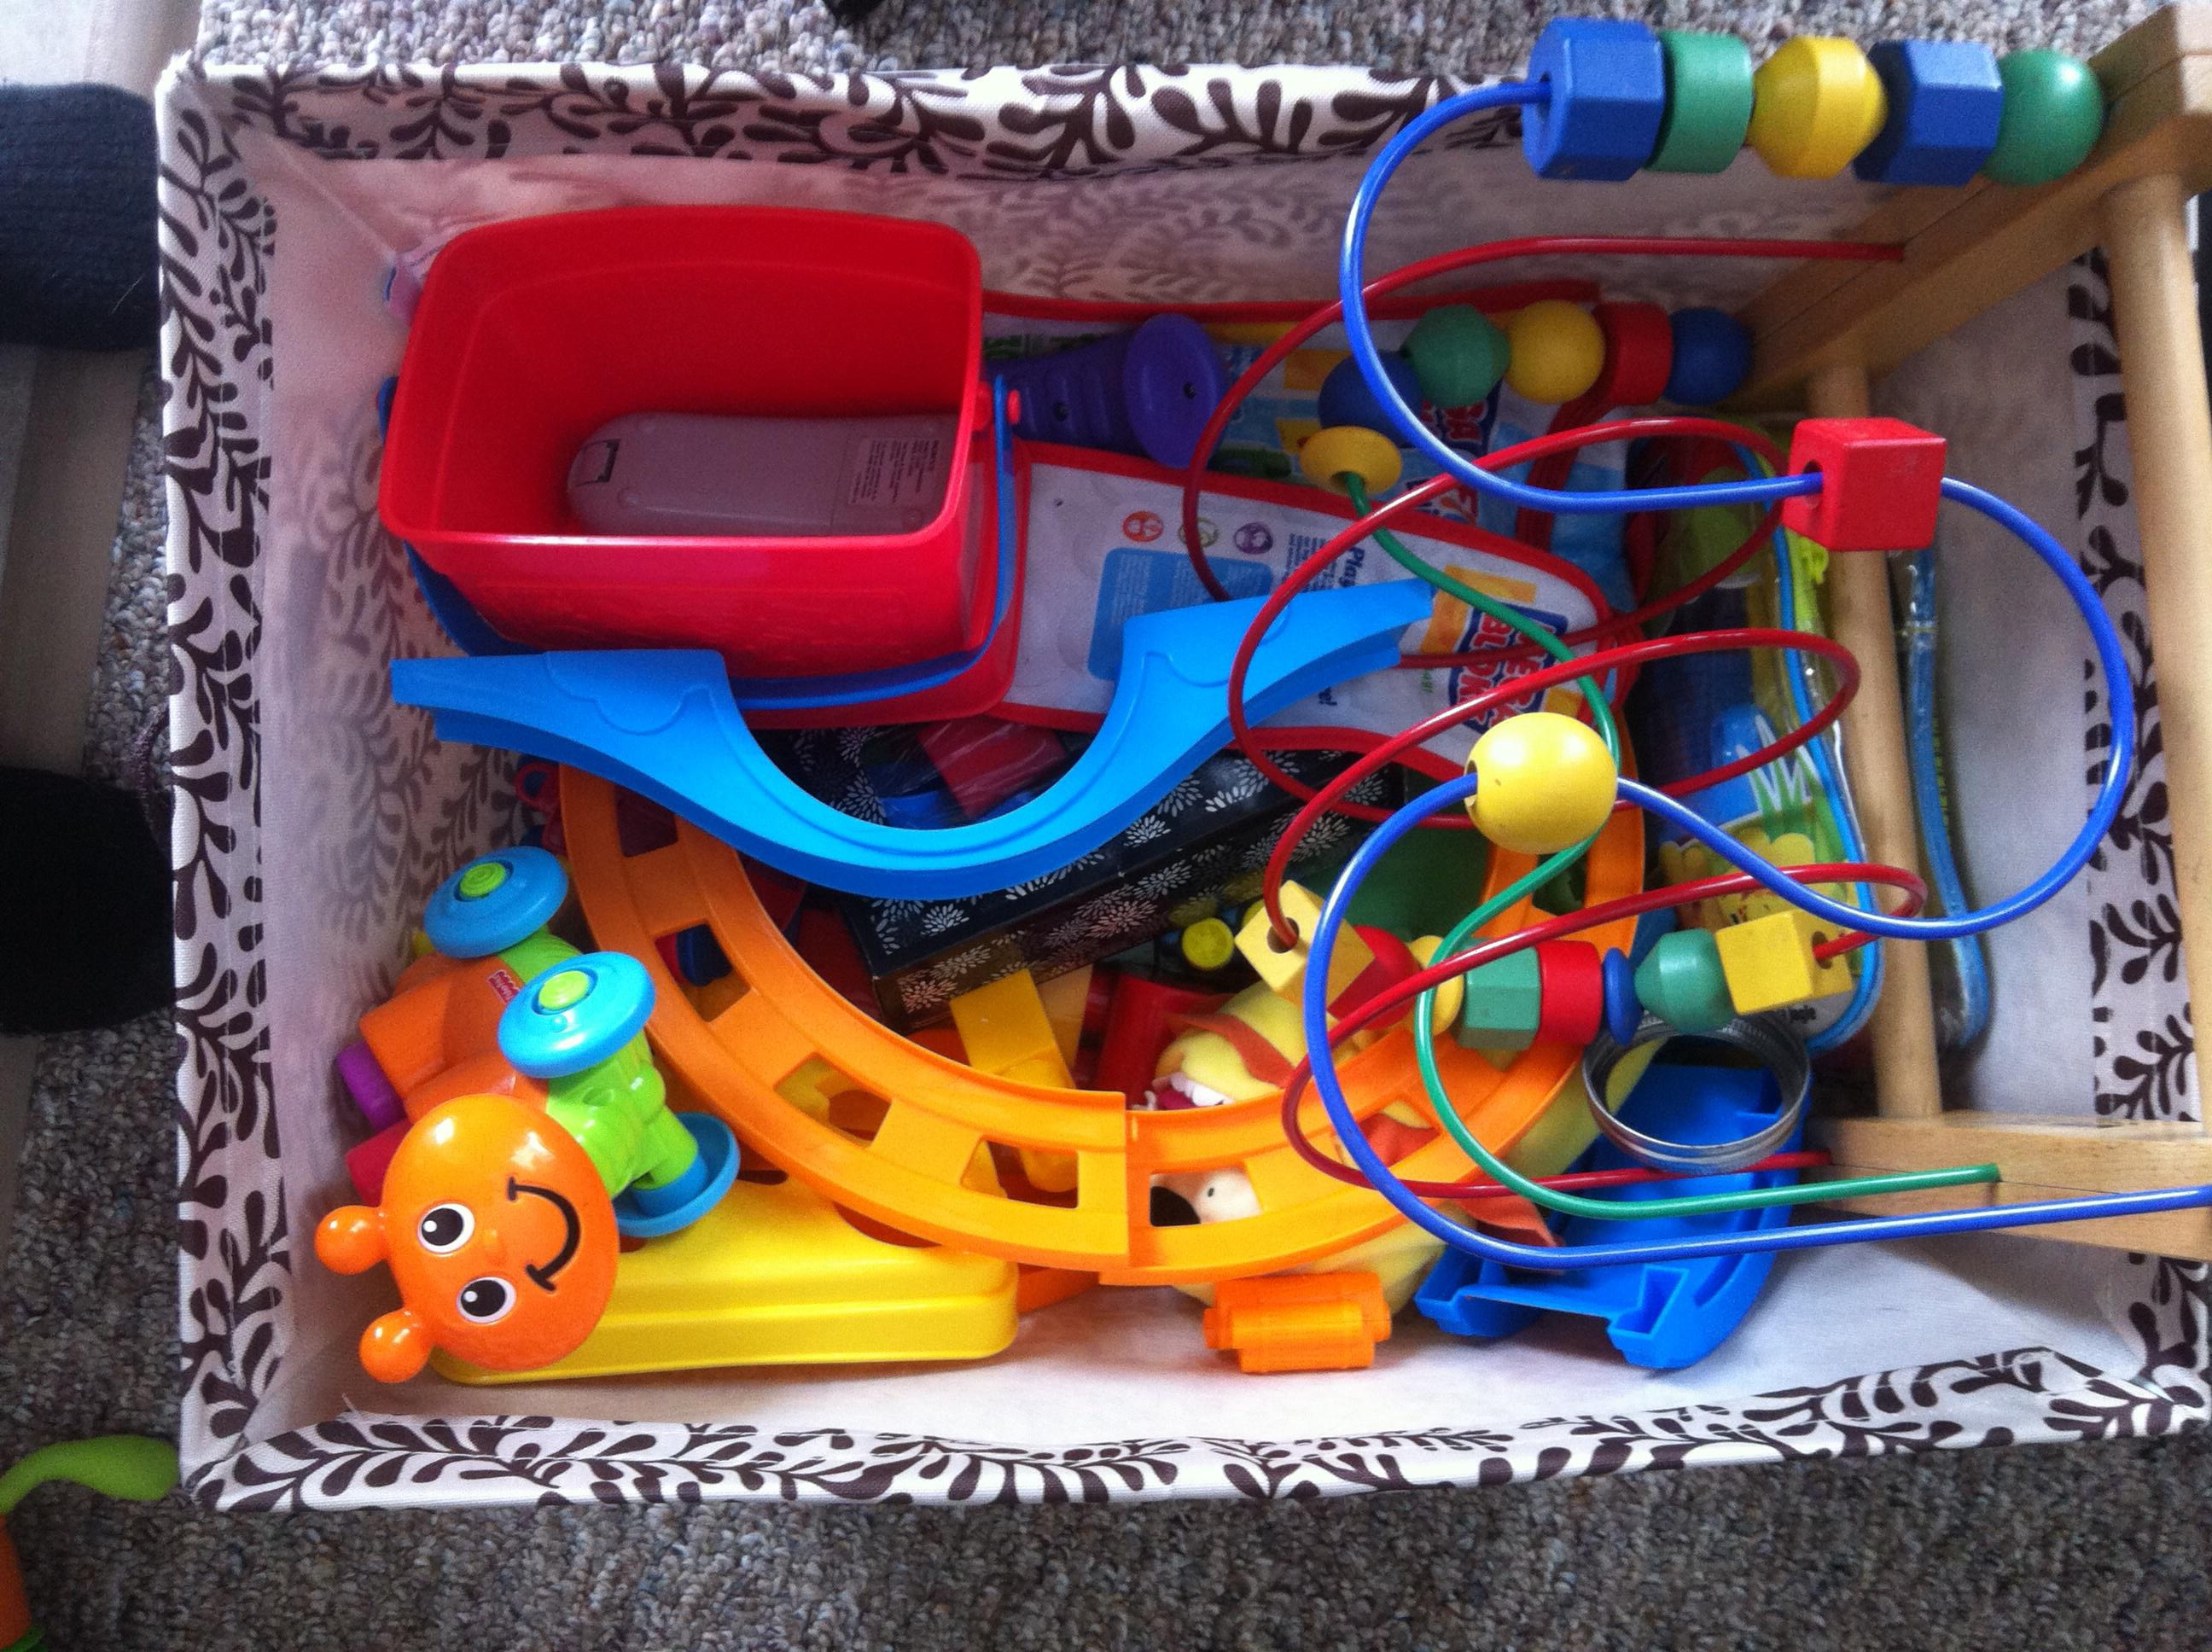 Kids toy organizer